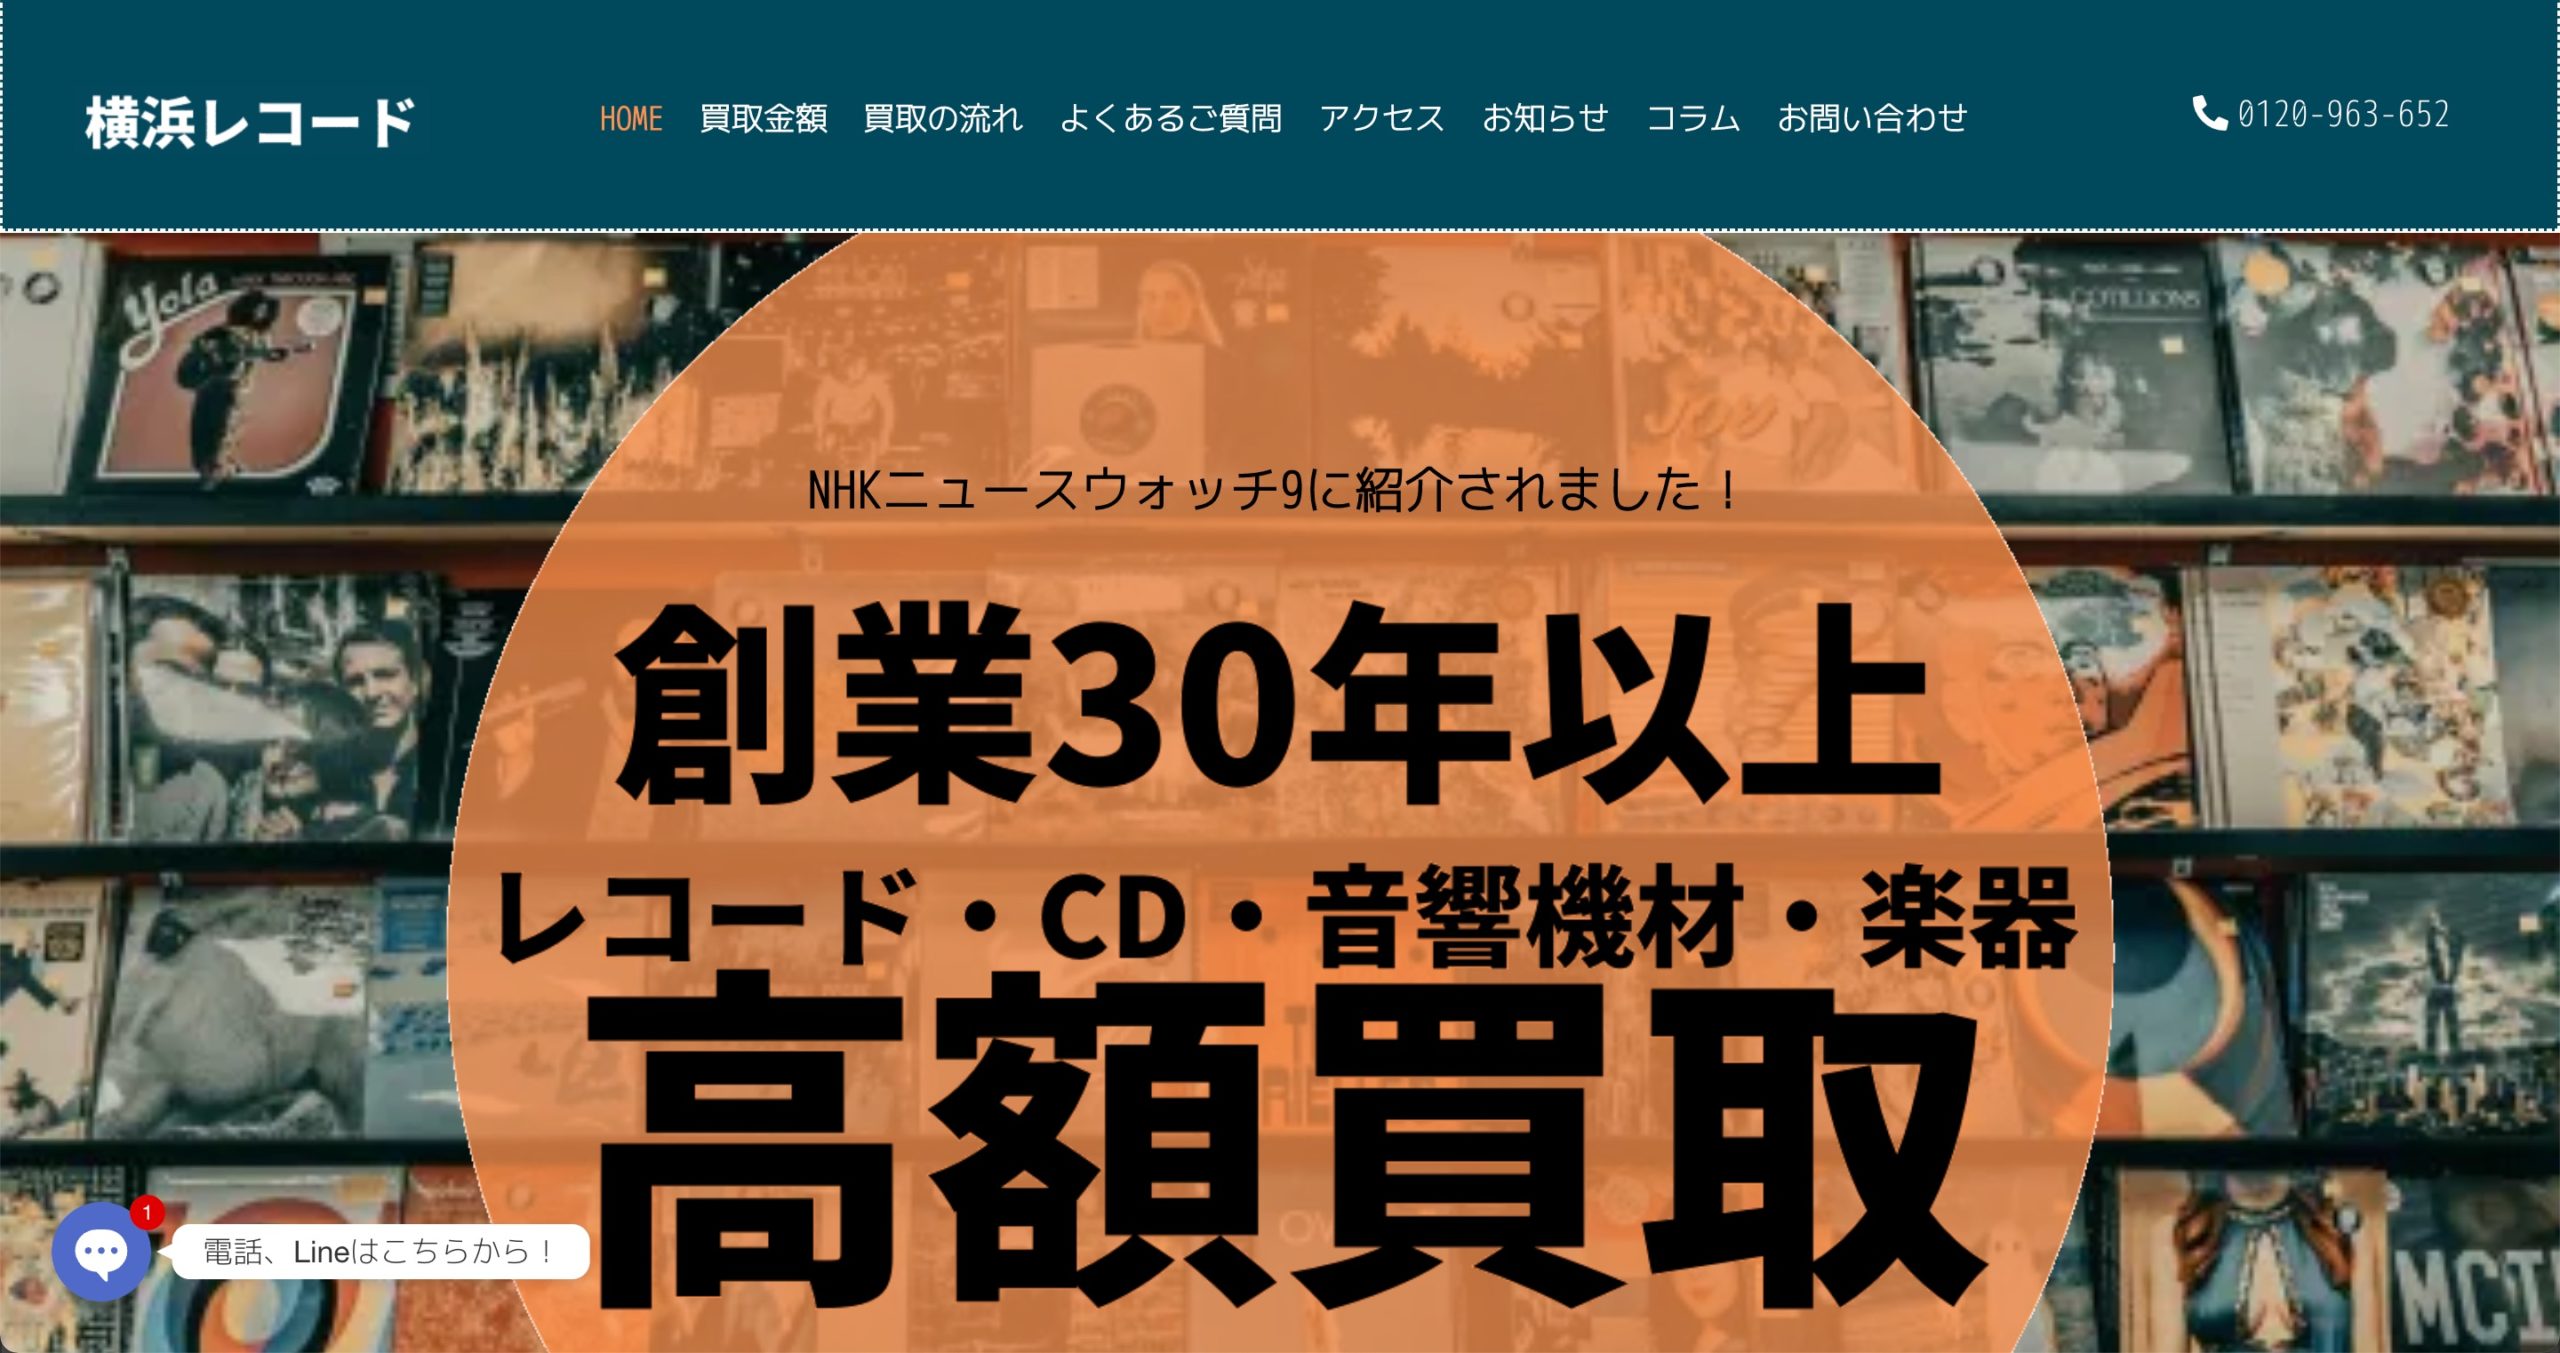 4. 横浜レコード